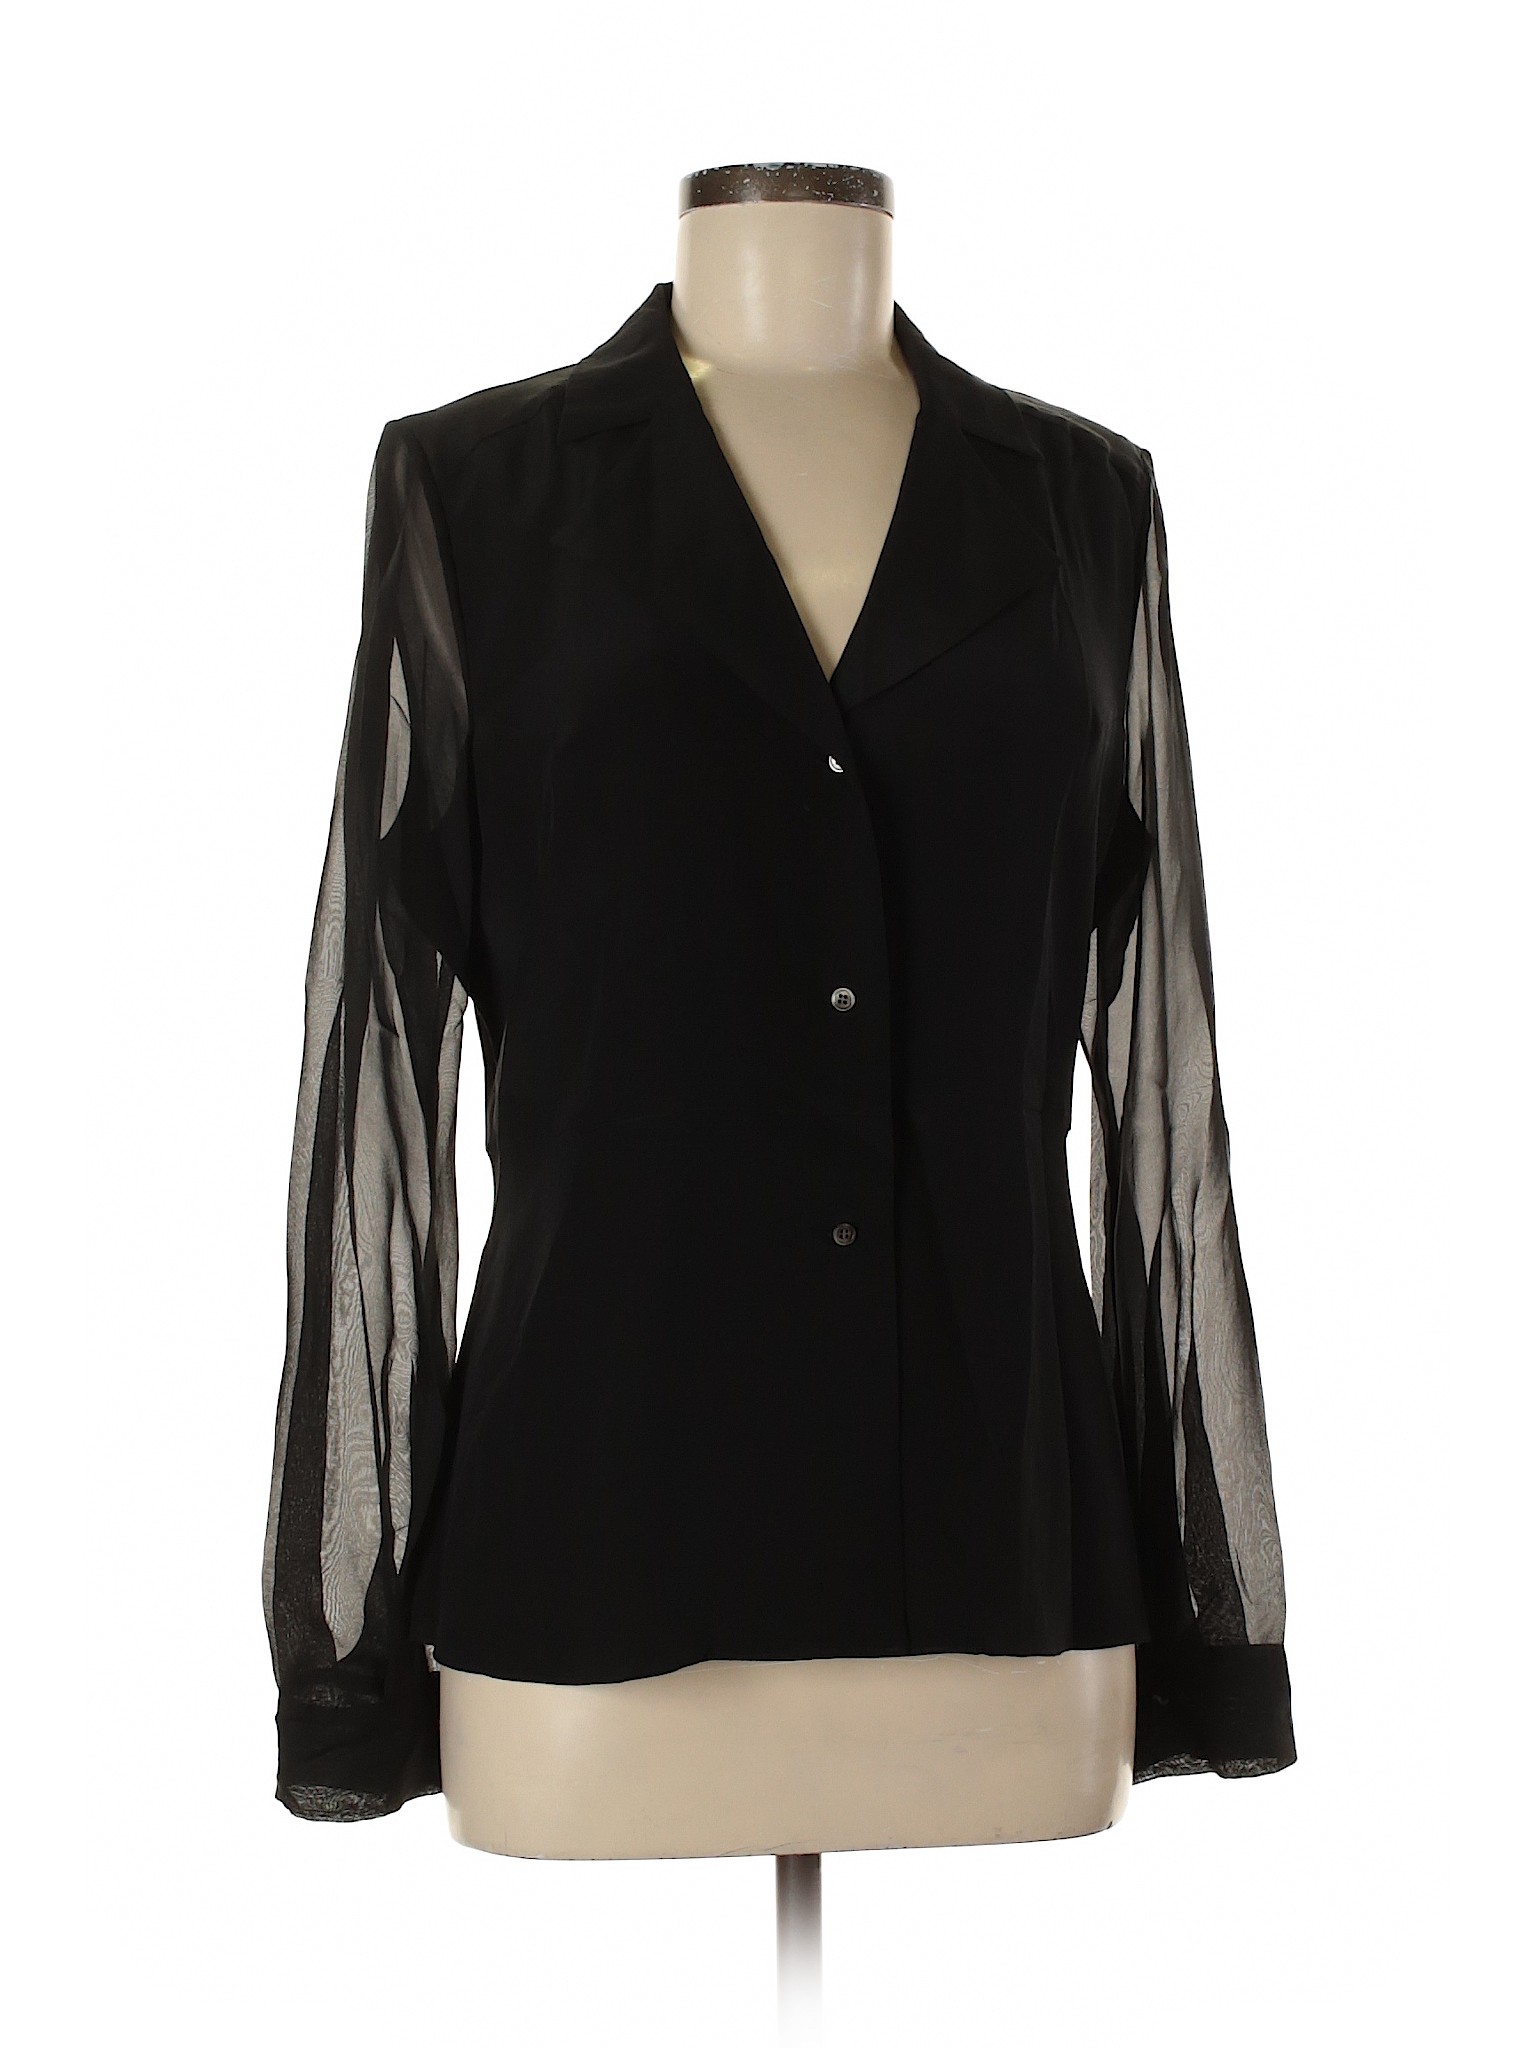 Saks Fifth Avenue Women Black Long Sleeve Blouse S | eBay